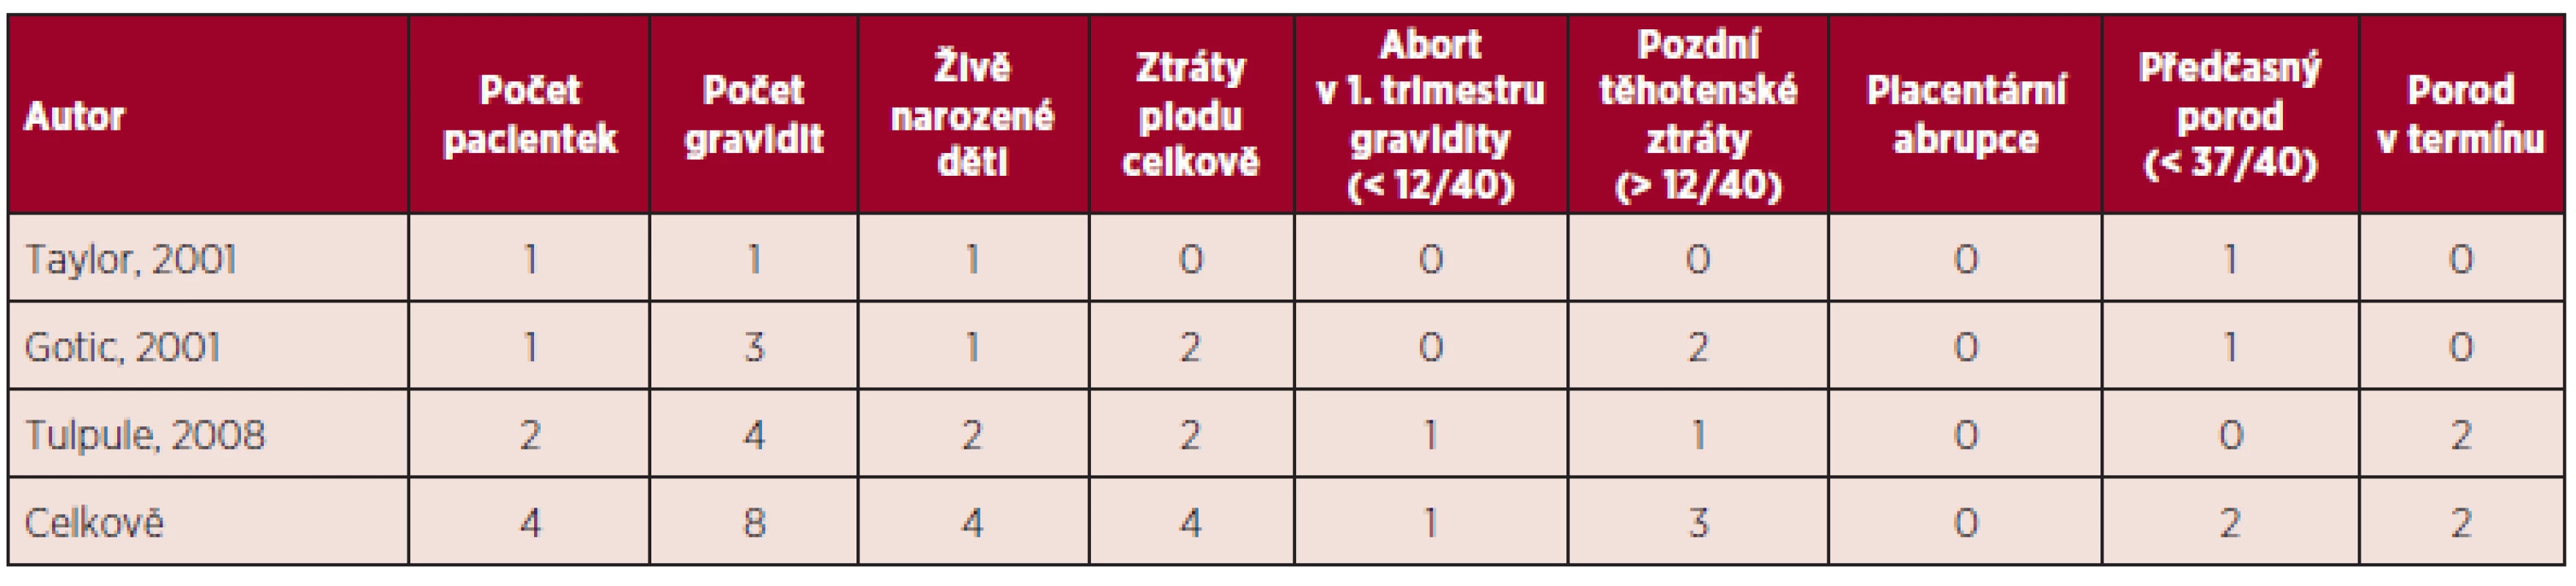 Primární myelofibróza a gravidita – souhrn literárních dat (5, 11).